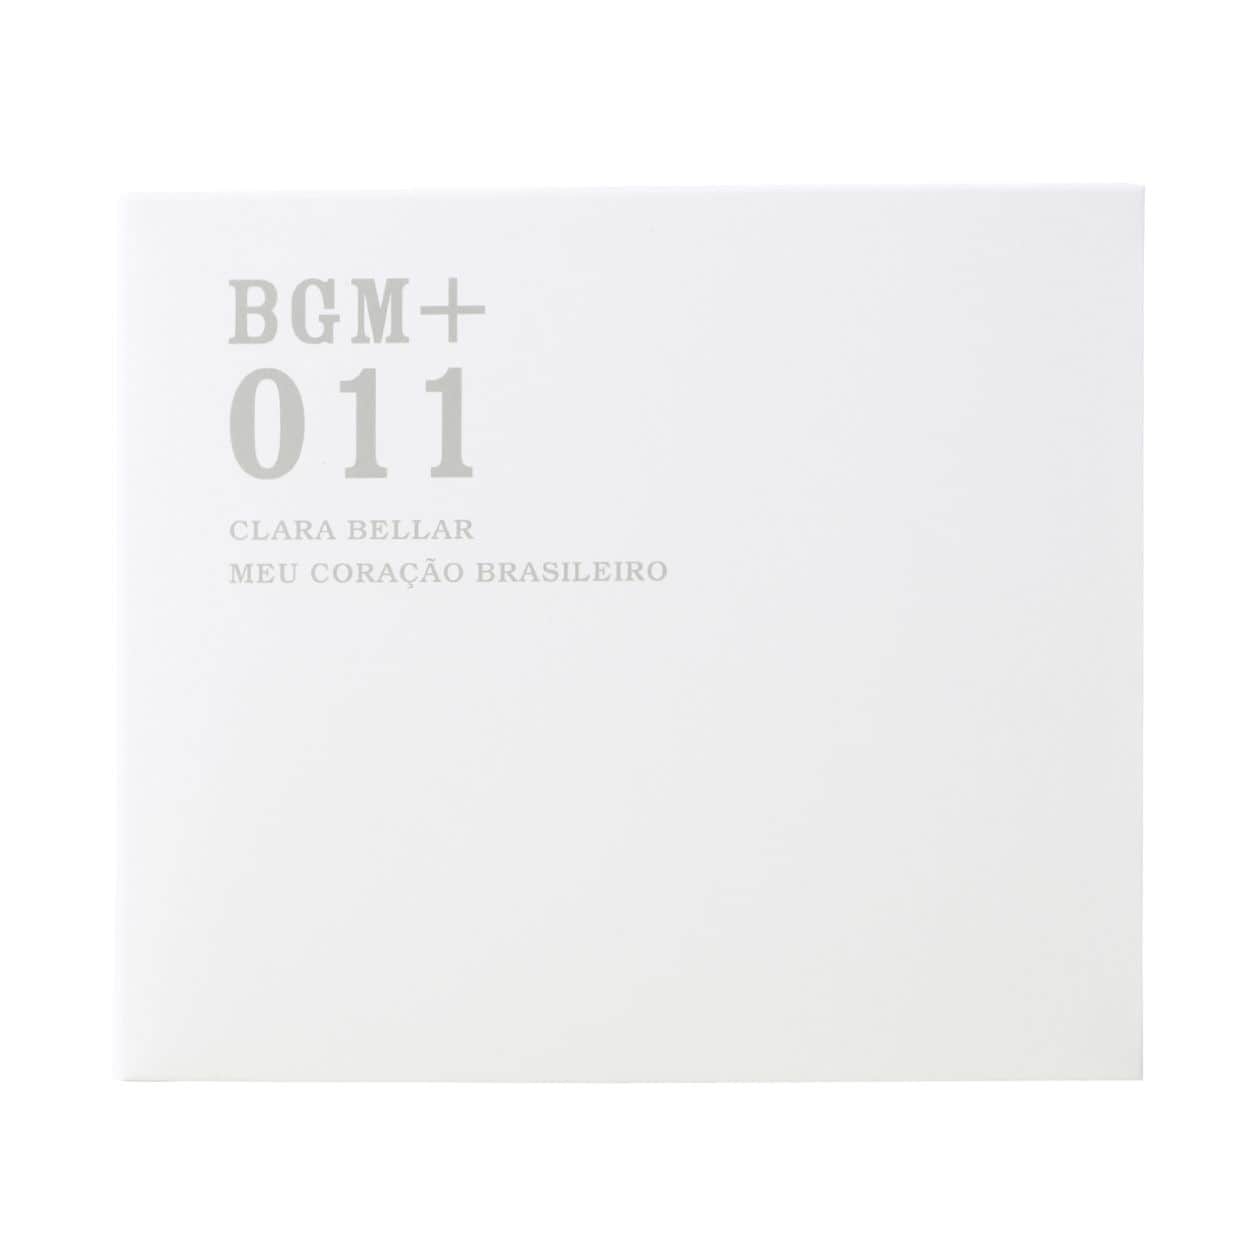 무인양품 일본 CD 음악 BGM +011 CLARA BELLAR